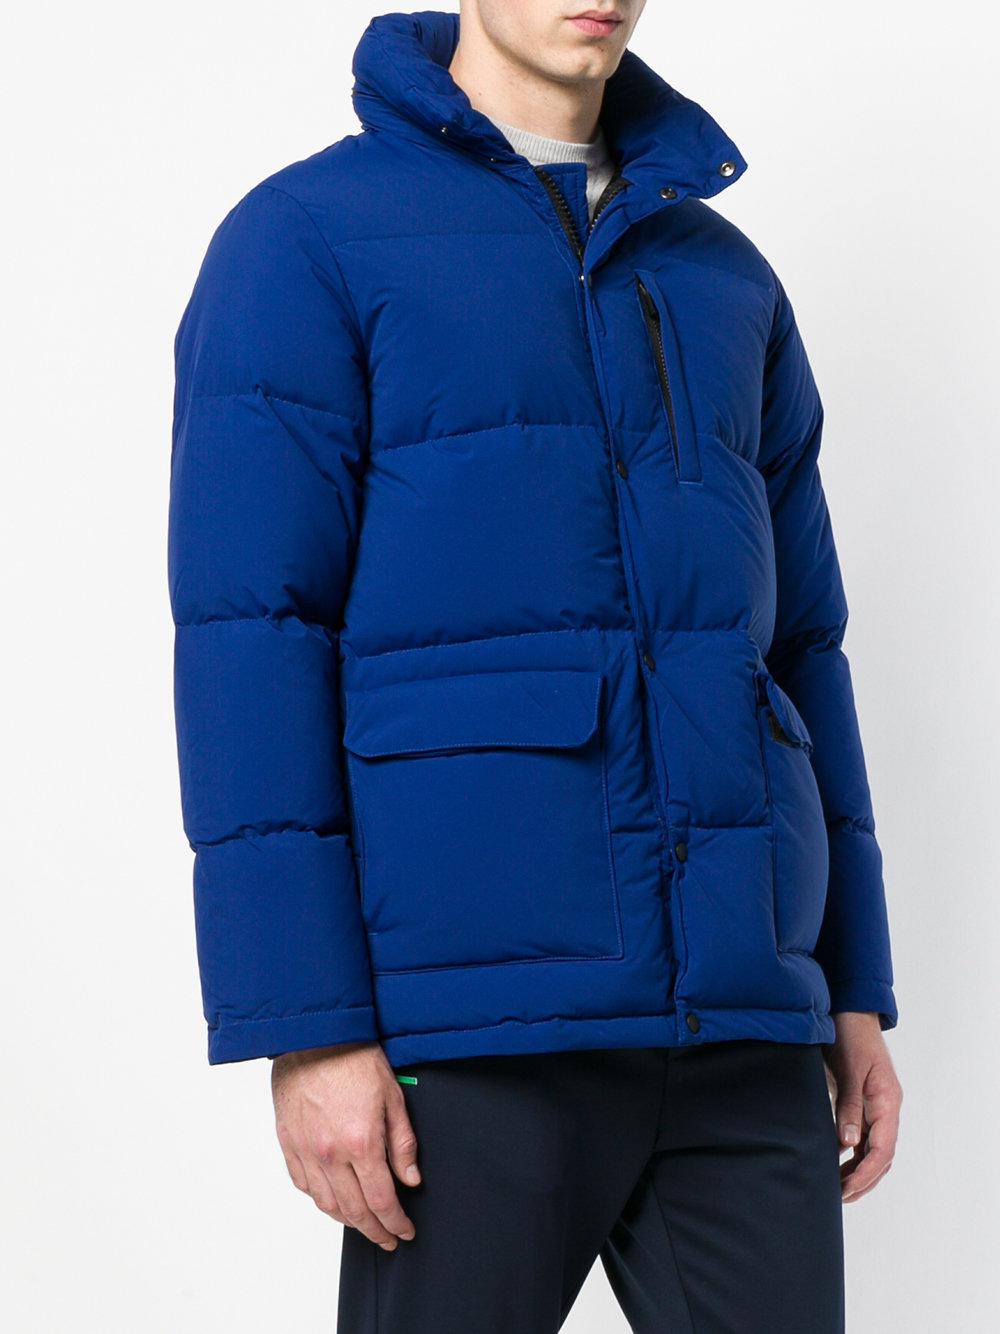 Aspesi Long-sleeve Padded Jacket in Blue for Men - Lyst